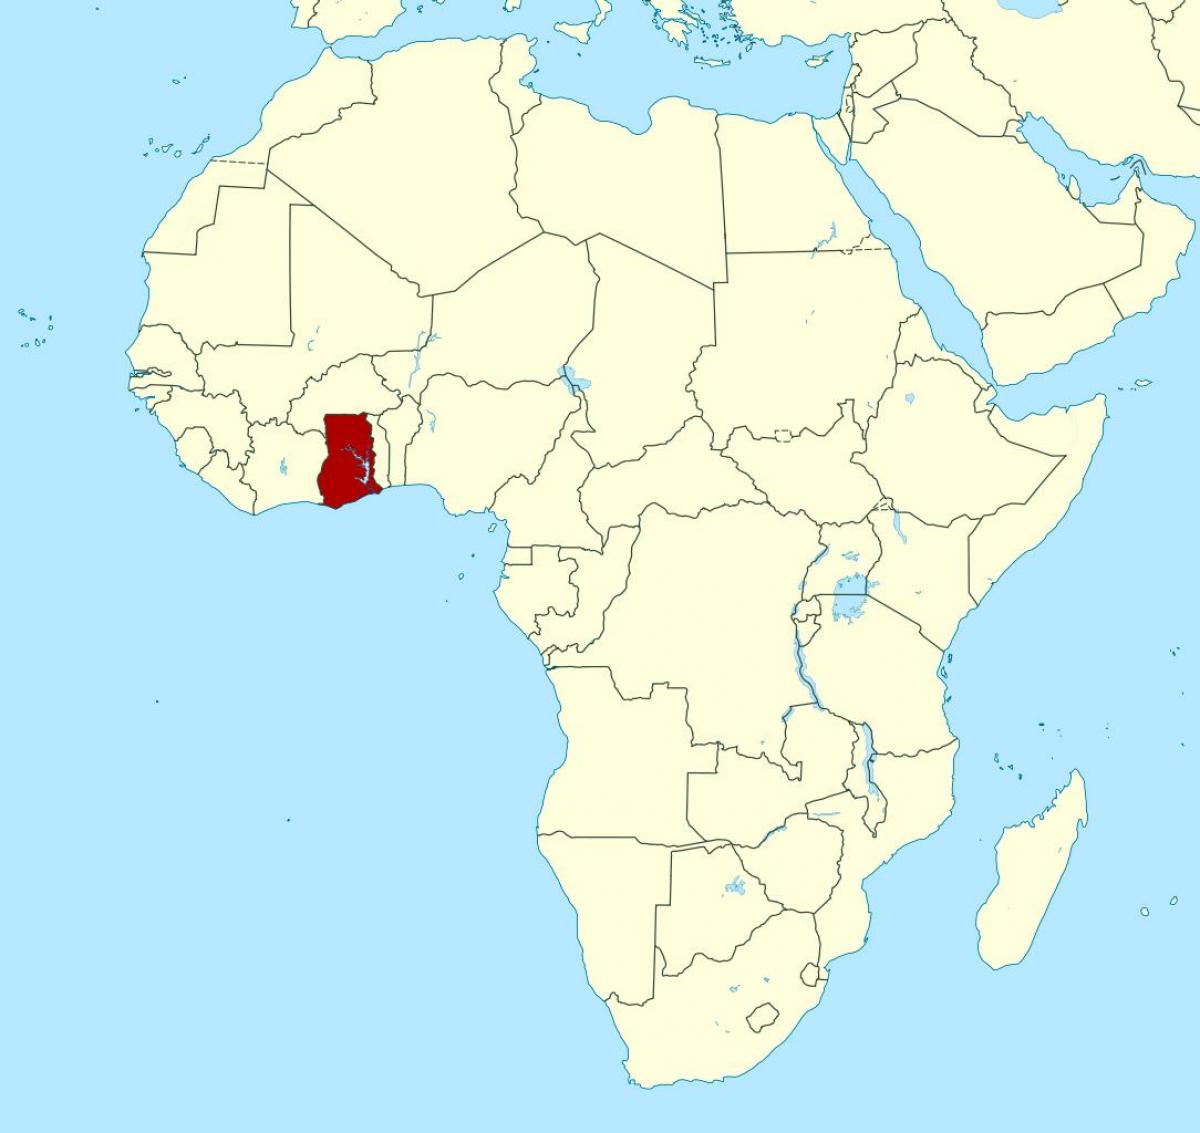 karta Afrike, pokazujući Gana